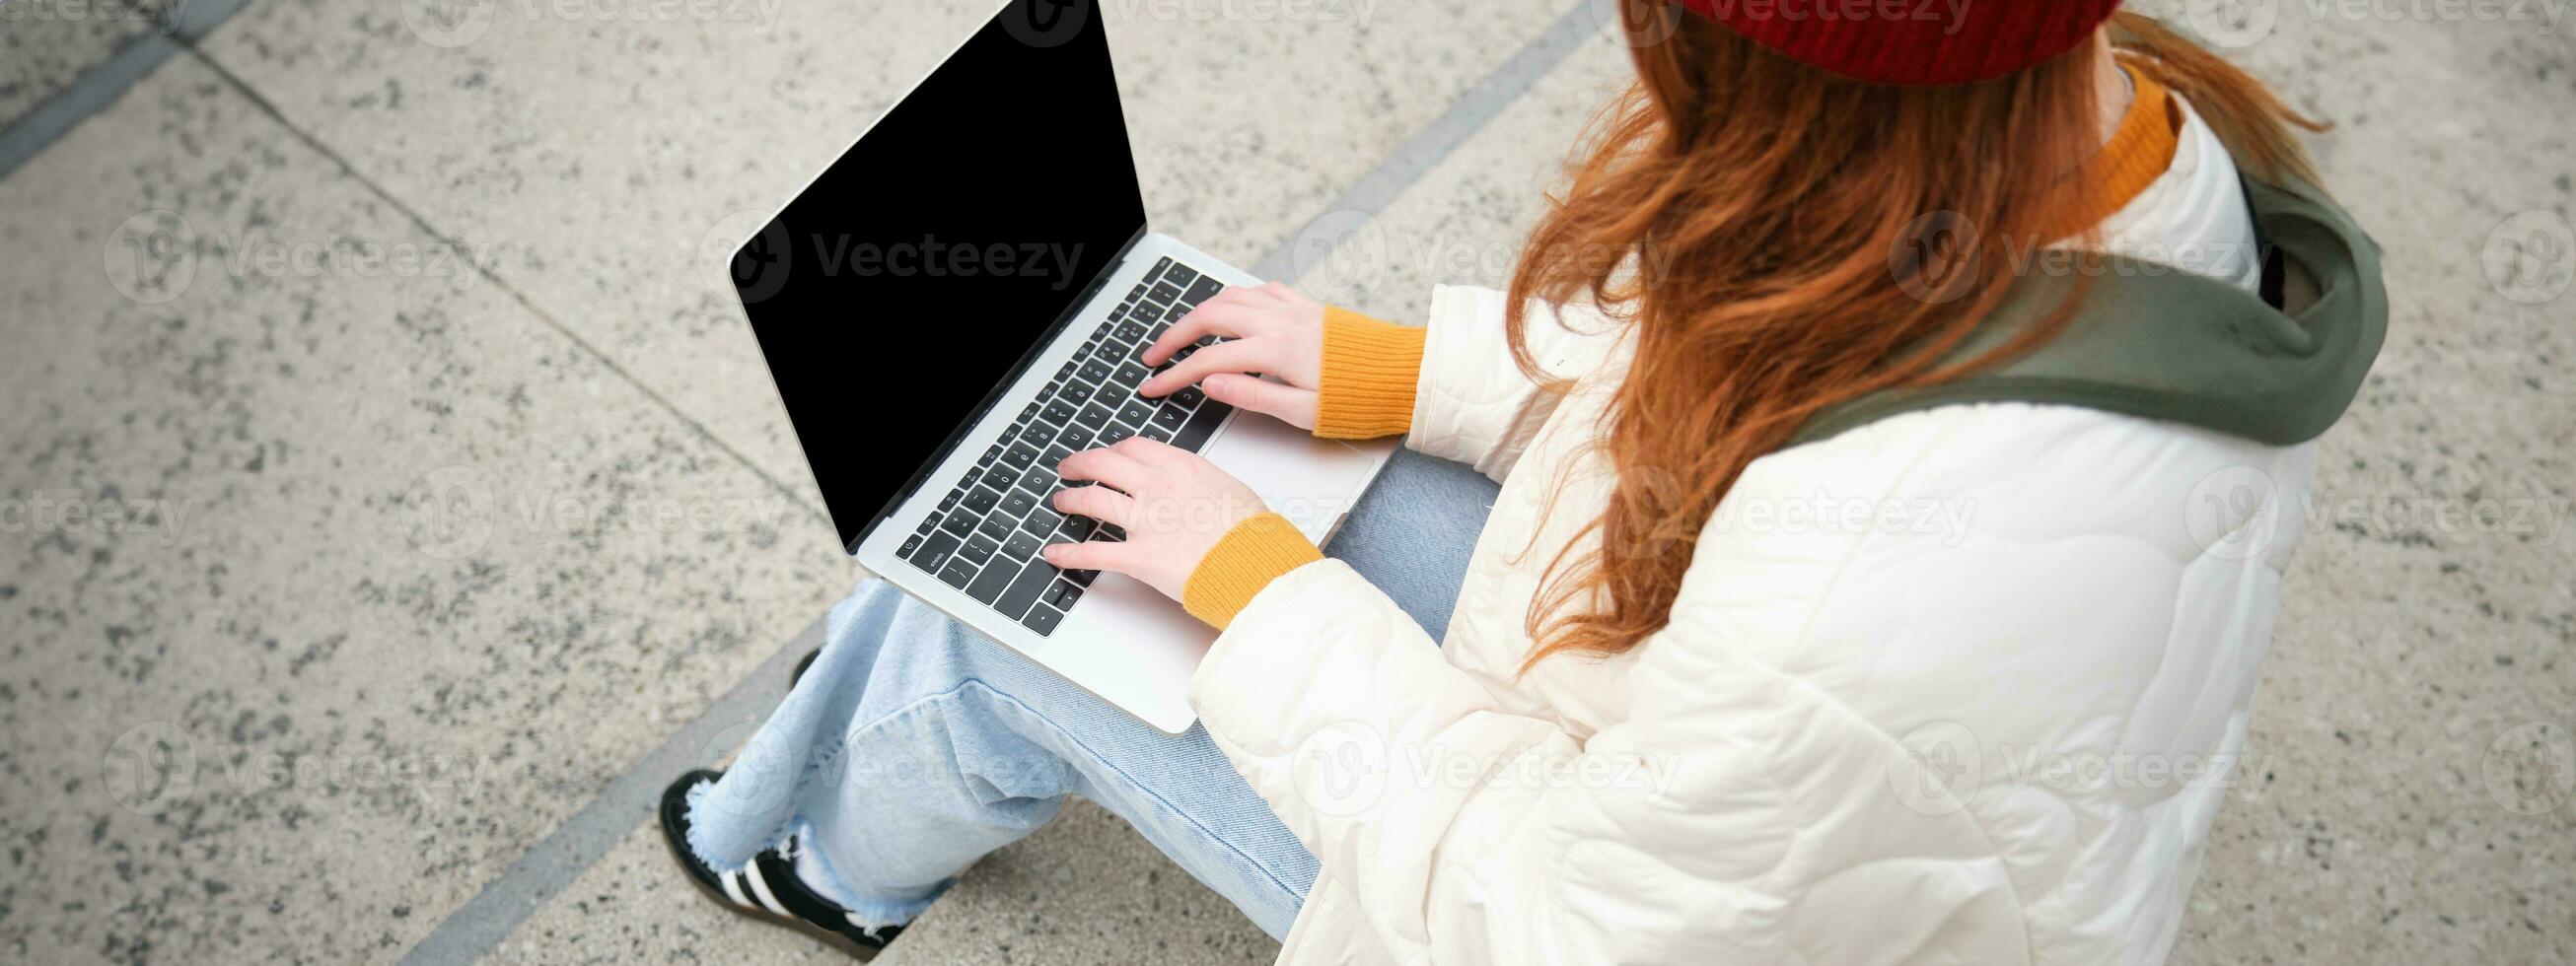 arrière vue de fille étudiant dactylographie sur portable clavier, Vide noir écran pour site Internet application publicité, séance sur escaliers en plein air, connecte à Publique Wifi photo